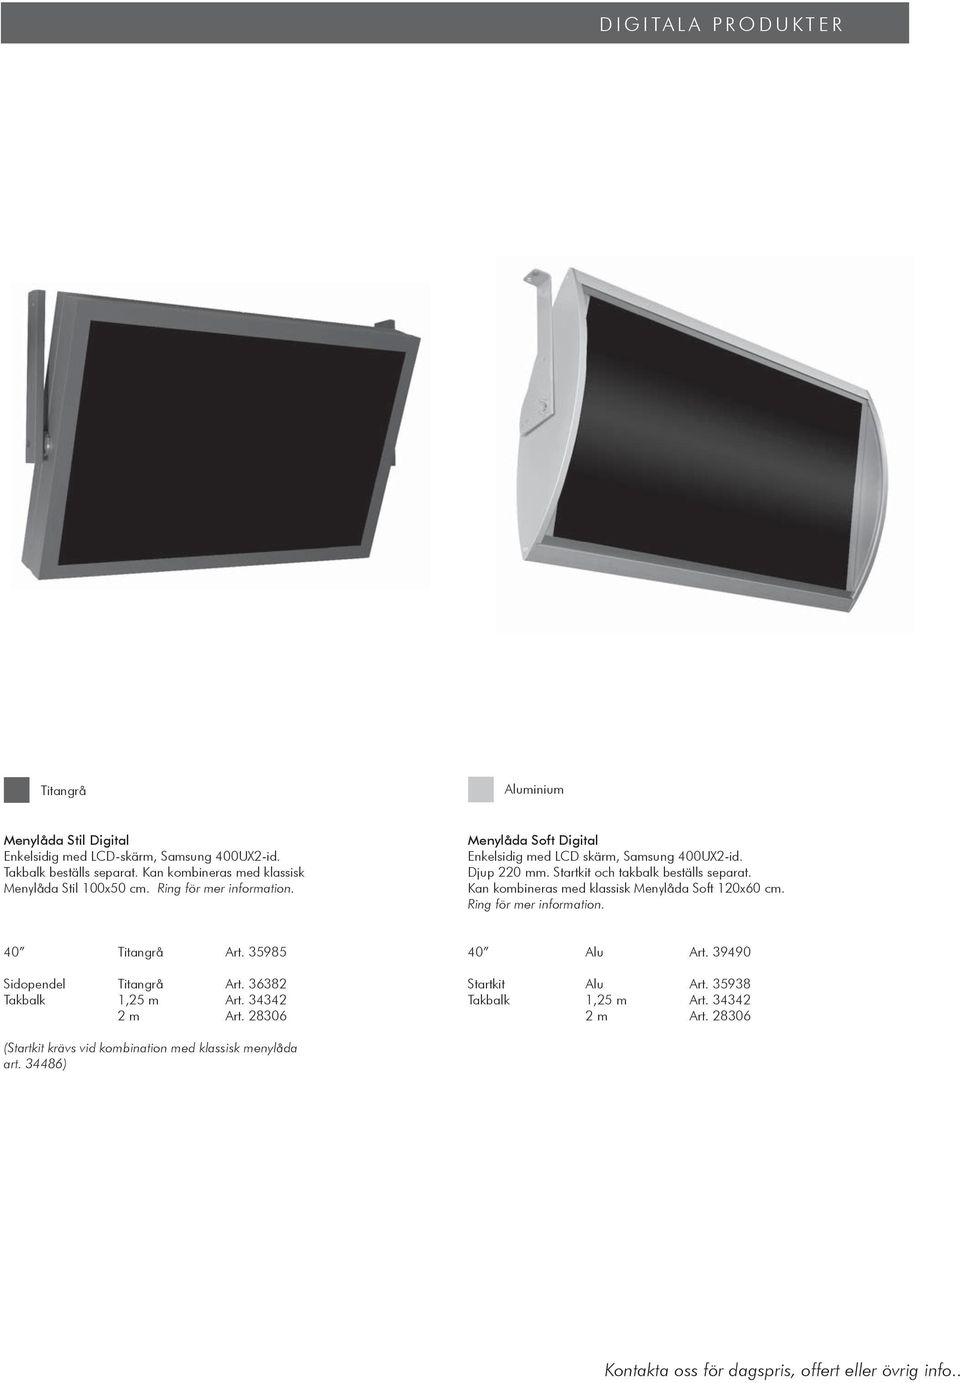 Menylåda Soft Digital Enkelsidig med LCD skärm, Samsung 400UX2-id. Djup 220 mm. Startkit och takbalk beställs separat. Kan kombineras med klassisk Menylåda Soft 120x60 cm. Ring för mer information.